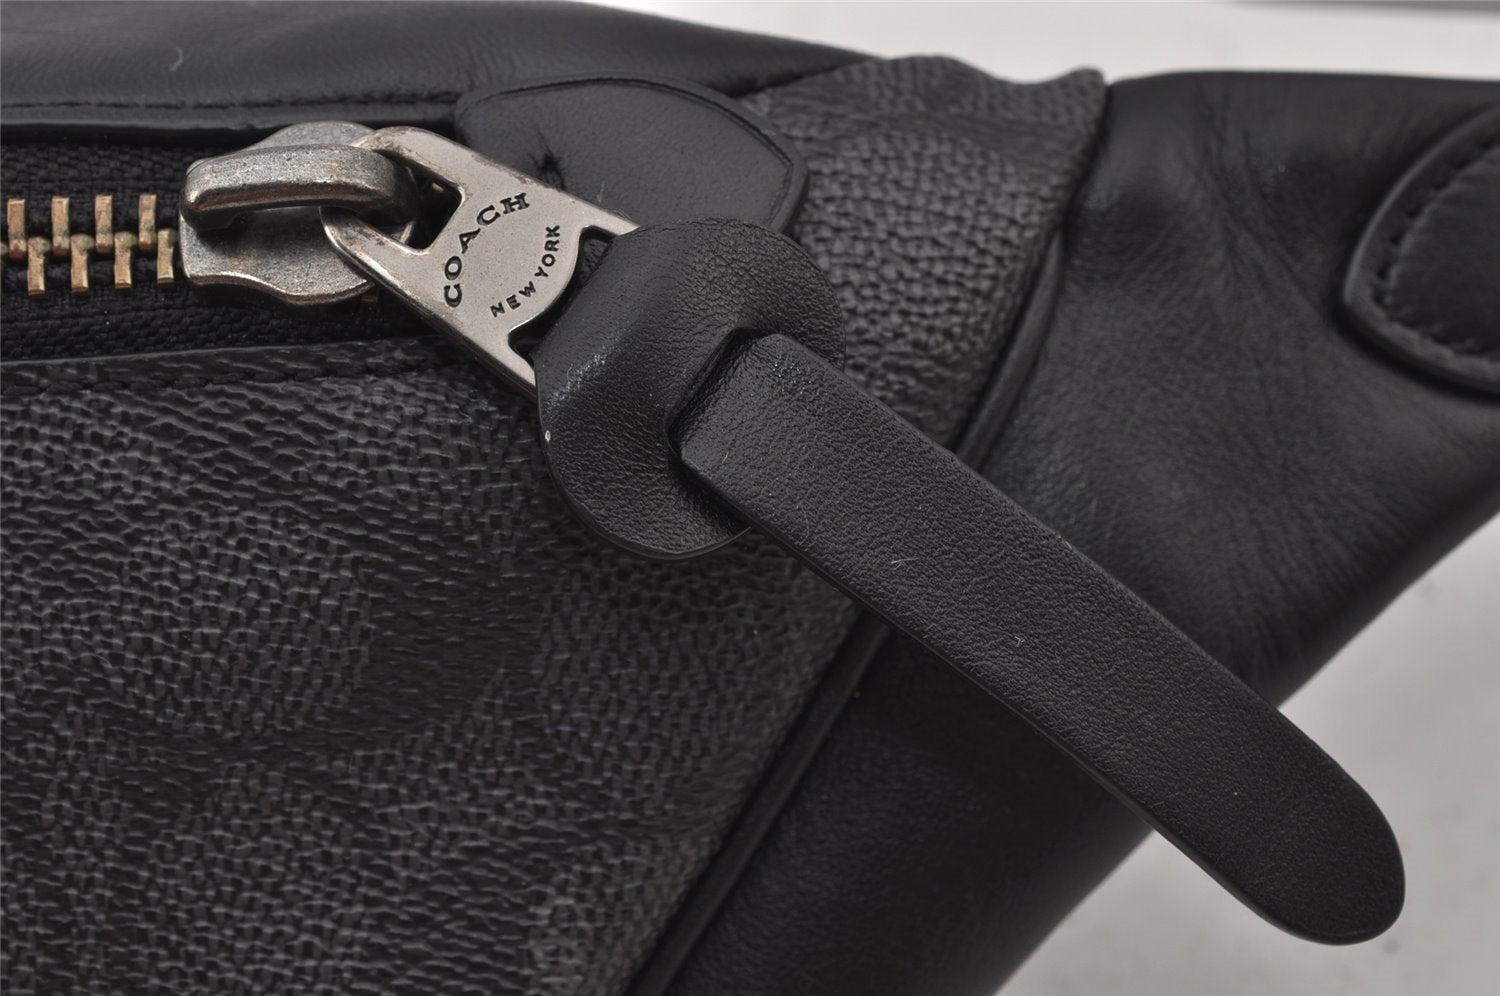 Authentic COACH Signature Waist Body Bag Purse PVC Leather 40345 Black 8027J